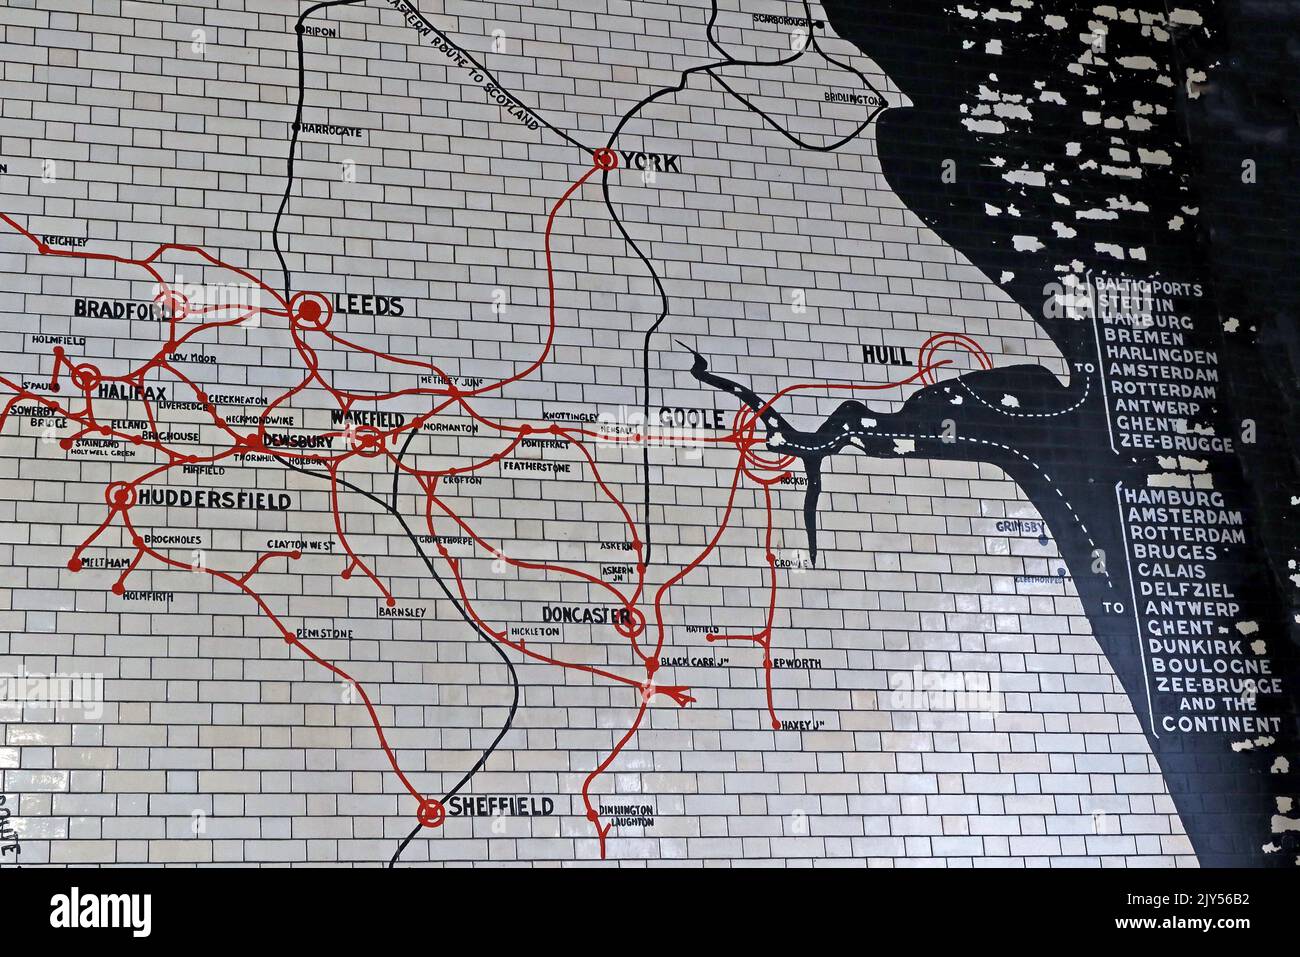 Mappa del vecchio percorso in piastrelle, Victoria Railway Station, Manchester, Inghilterra, Regno Unito, m3 1WY - West Yorkshire, Bradford, Halifax, Huddersfield, Wakefield, Sheffield, Foto Stock